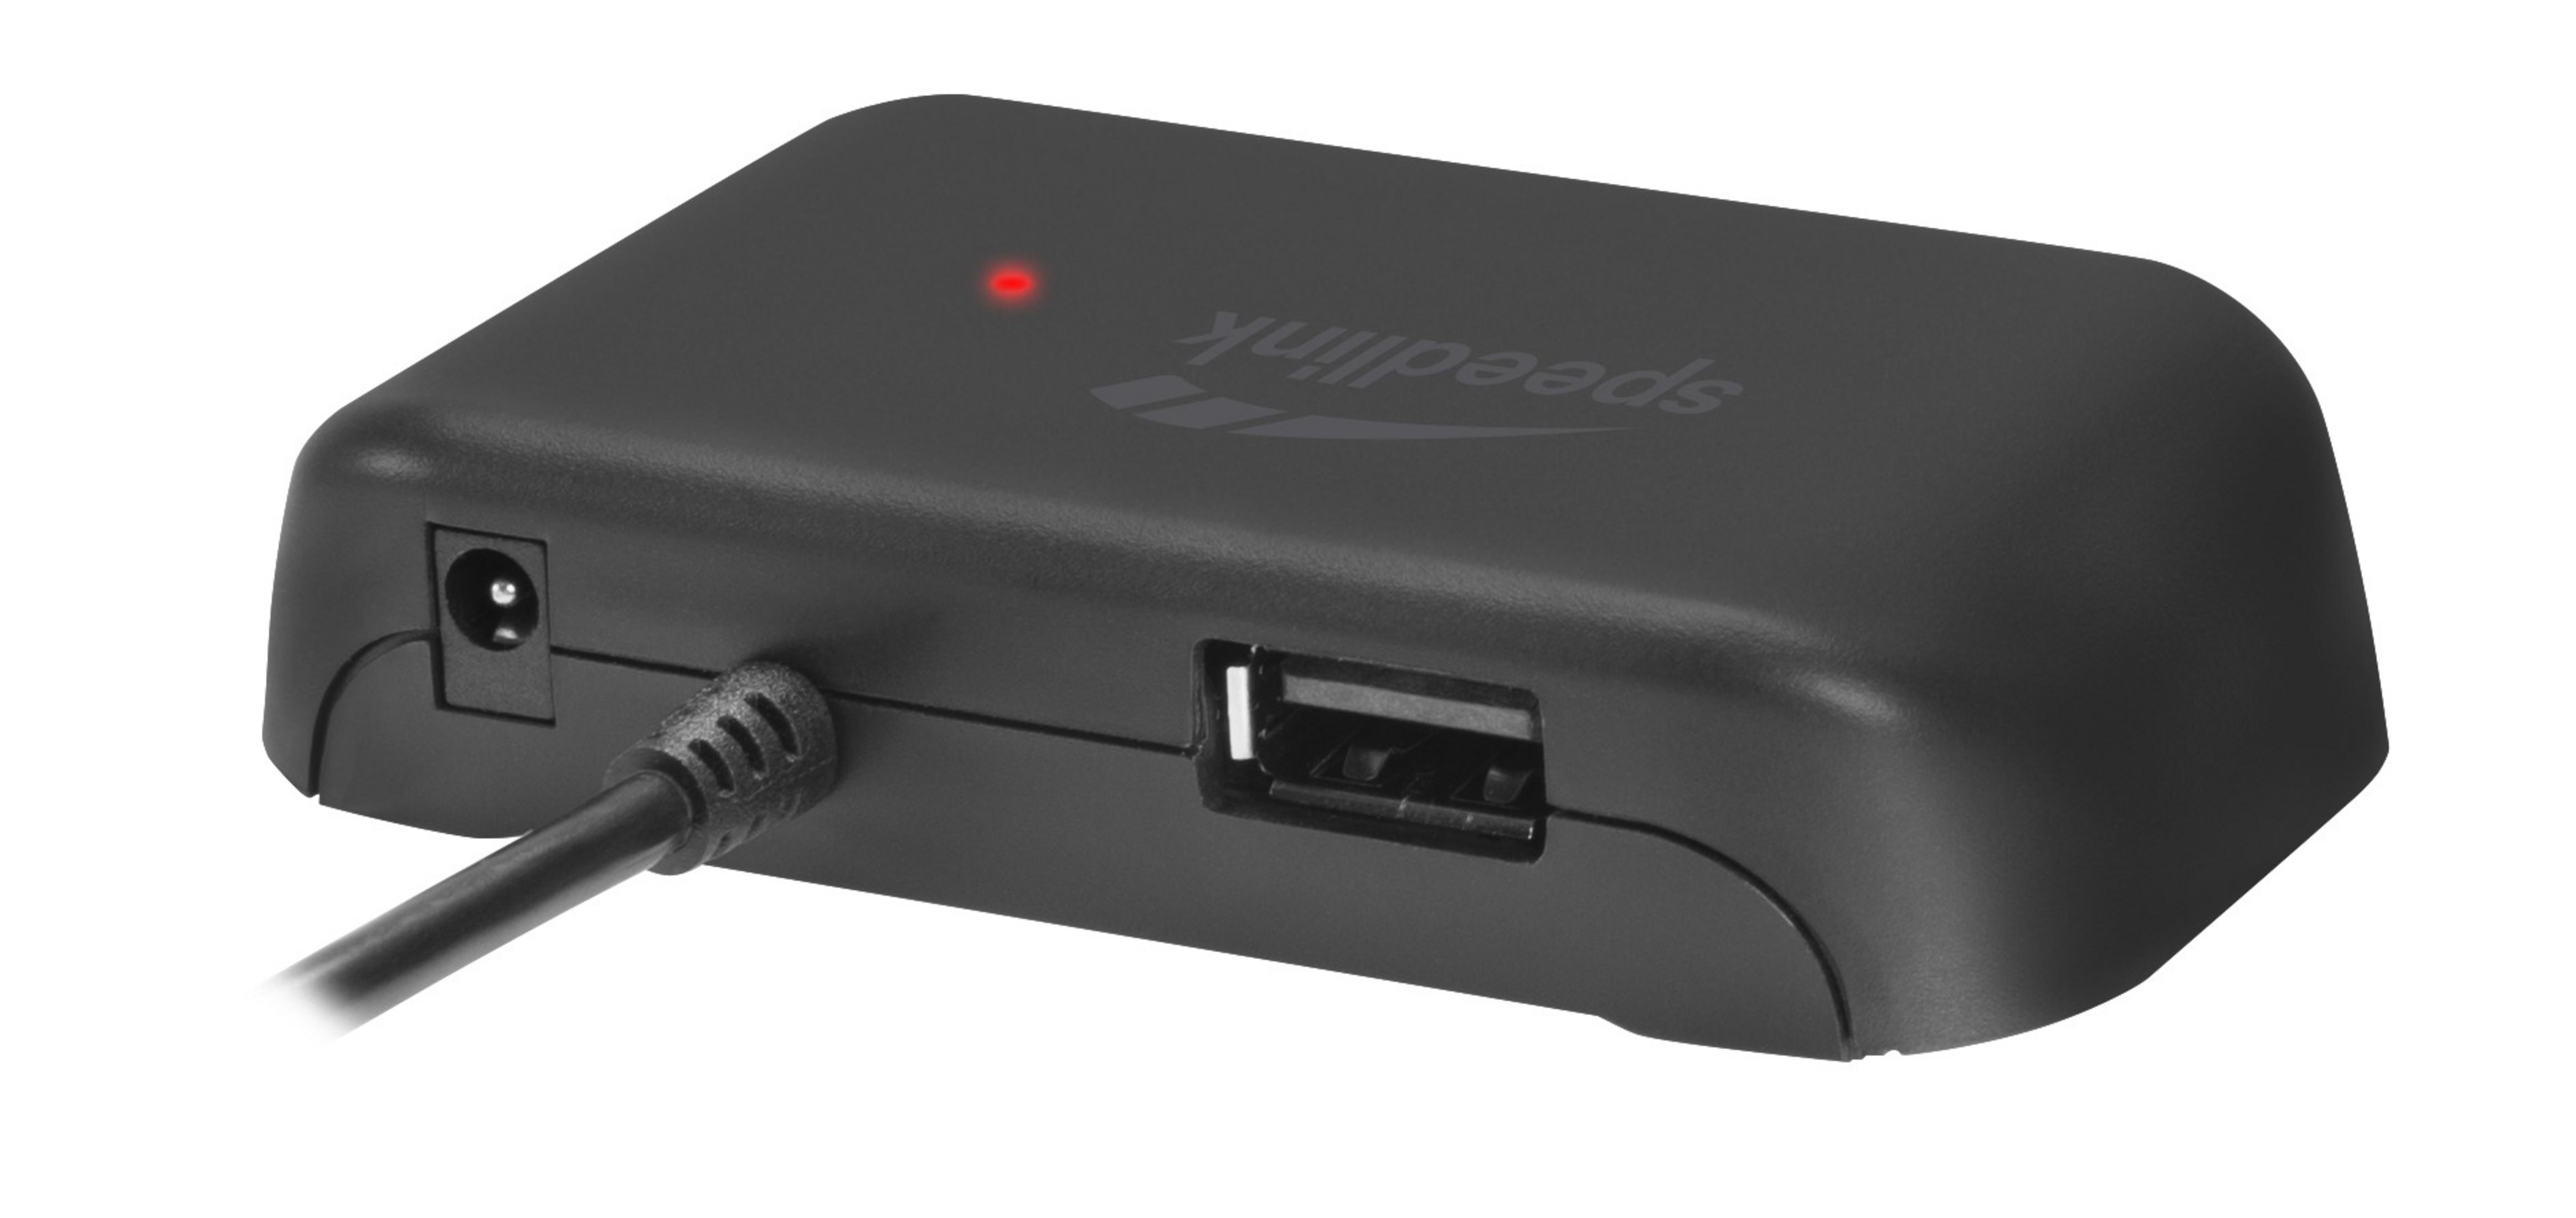 SL-140004-BK USB HUB EVO 2.0, Schwarz USB Hub, SNAPPY SPEEDLINK 4-PORT